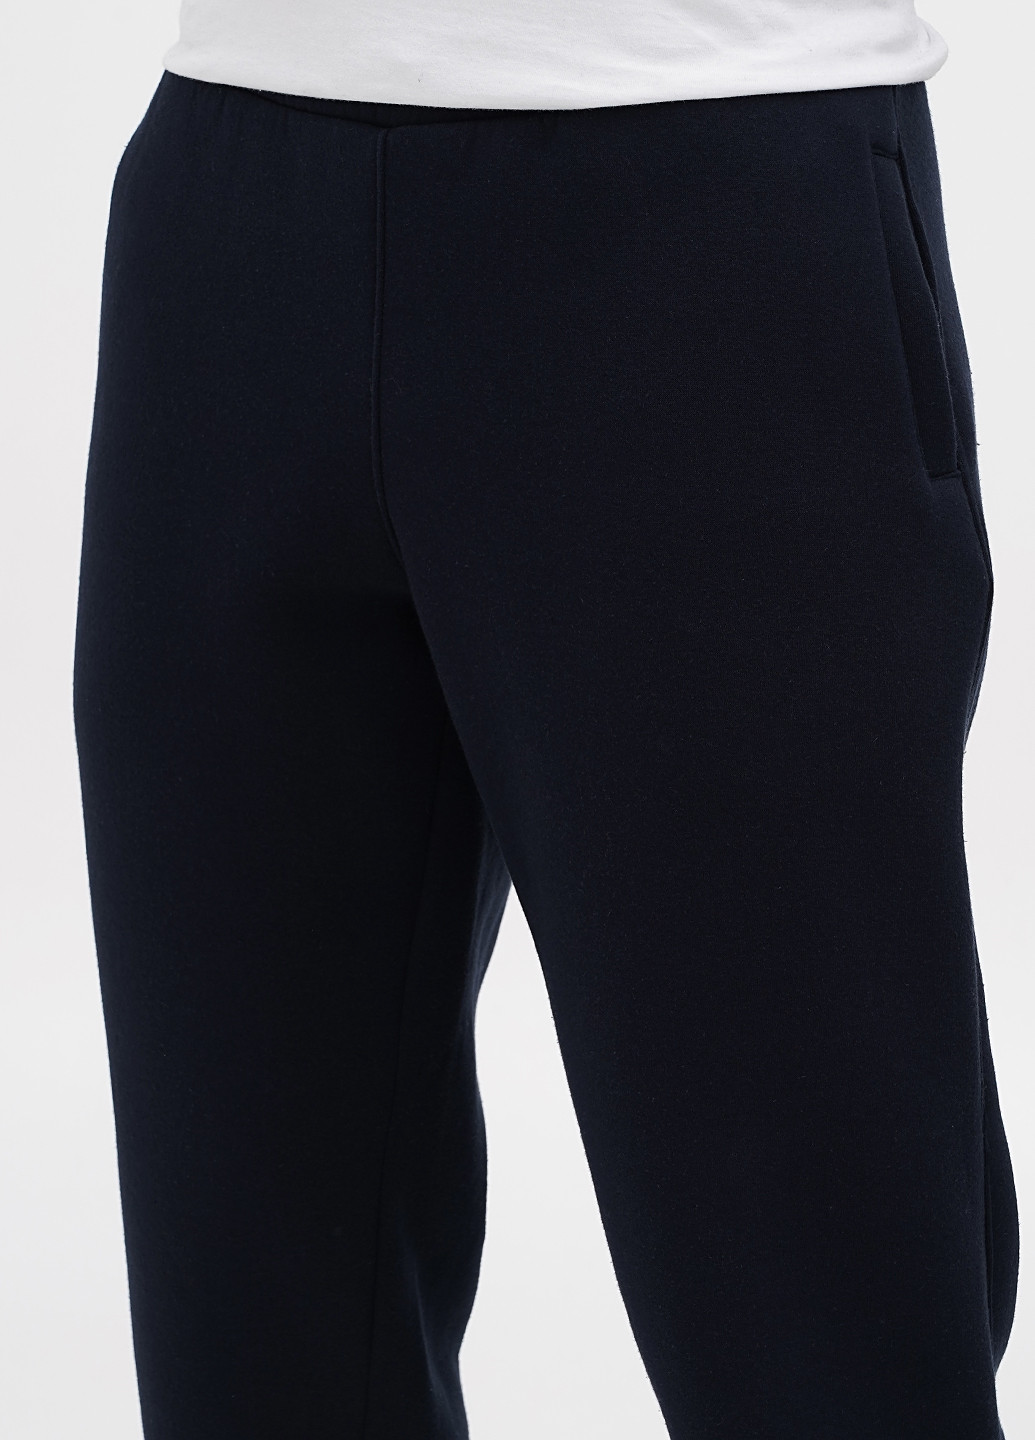 Темно-синие спортивные демисезонные джоггеры брюки Lucci